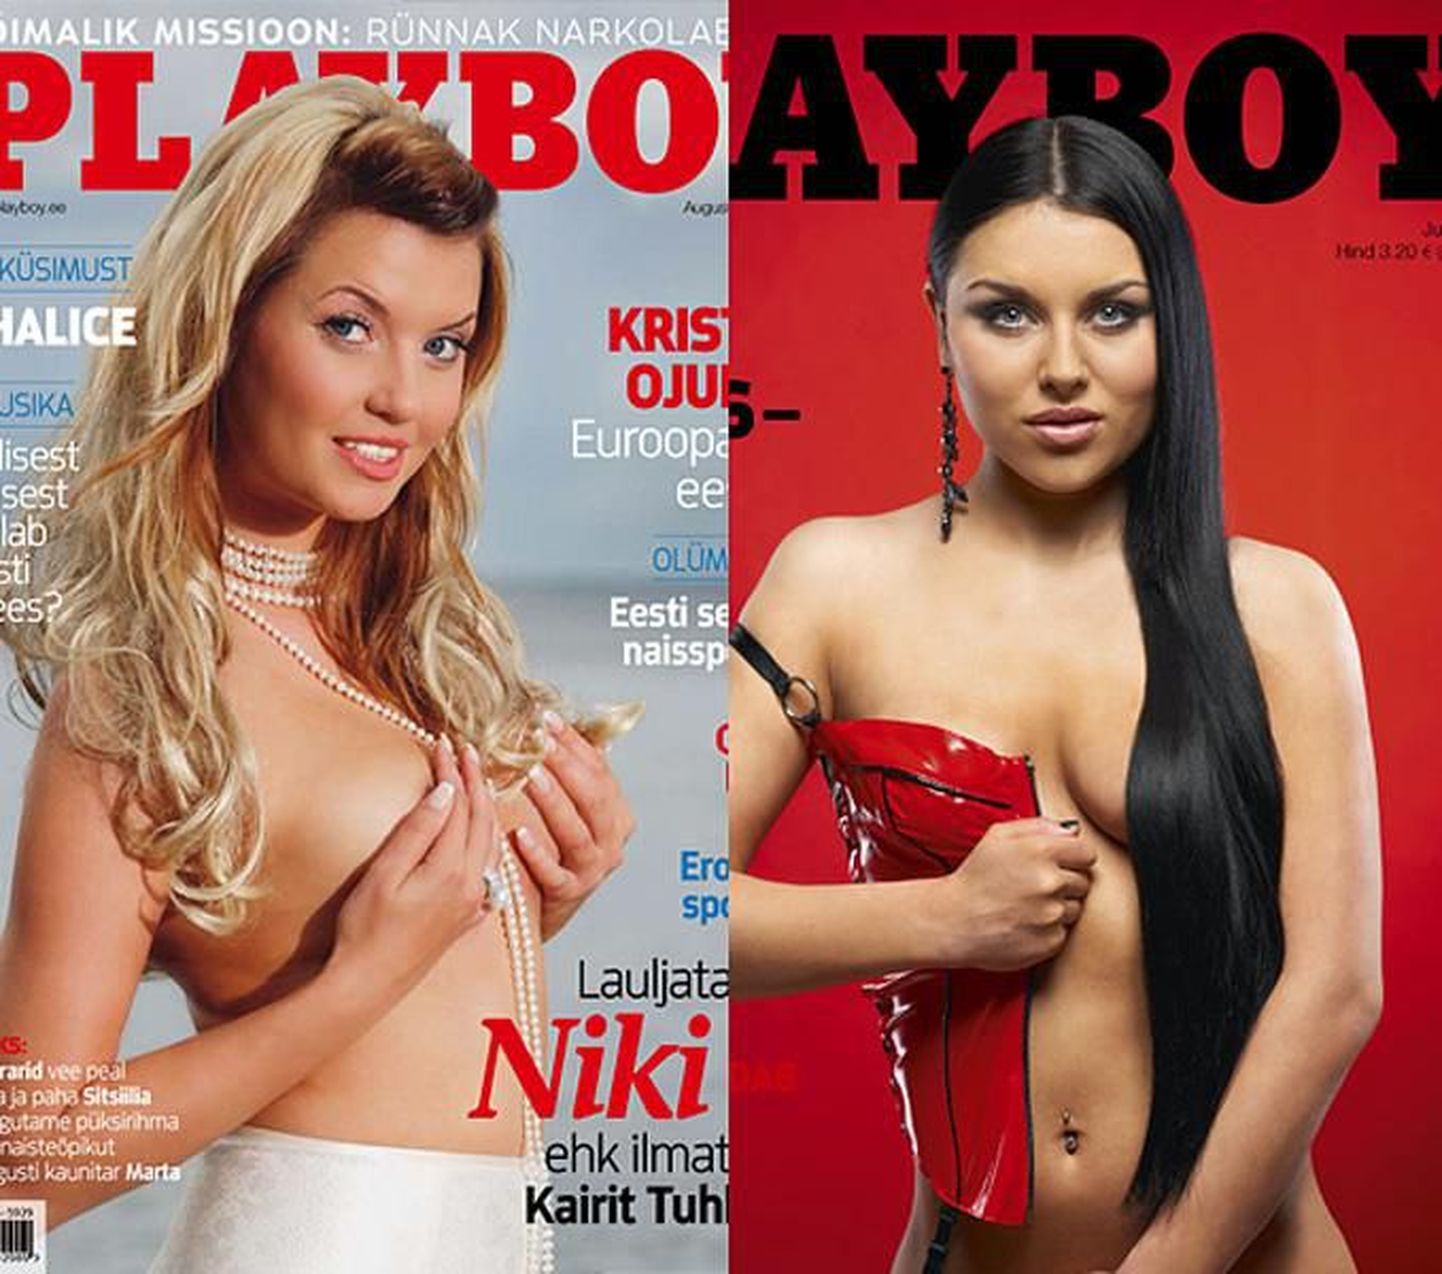 Kumb Playboy kaanestaar kütab Sind rohkem üles? Kas Kairit Tuhkanen või Margret Järv?